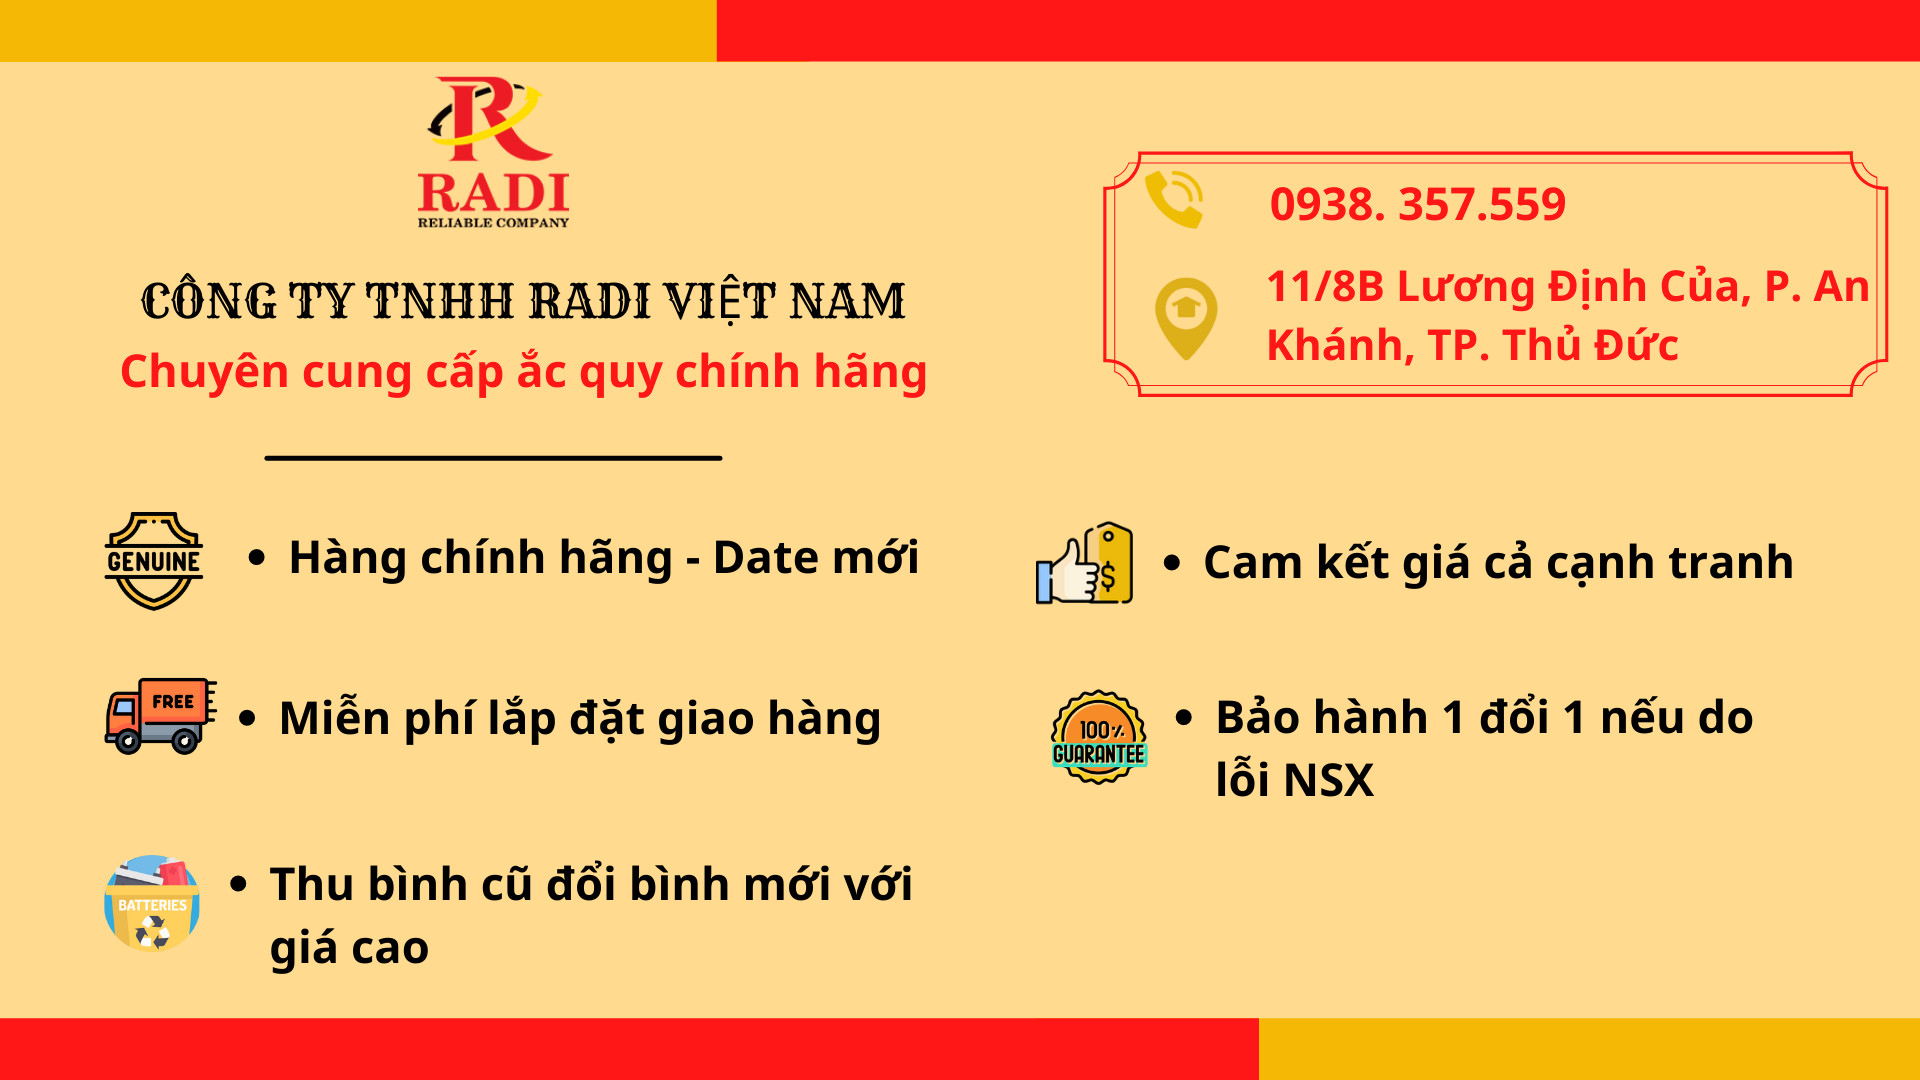 Đại lý ắc quy Radi Việt Nam